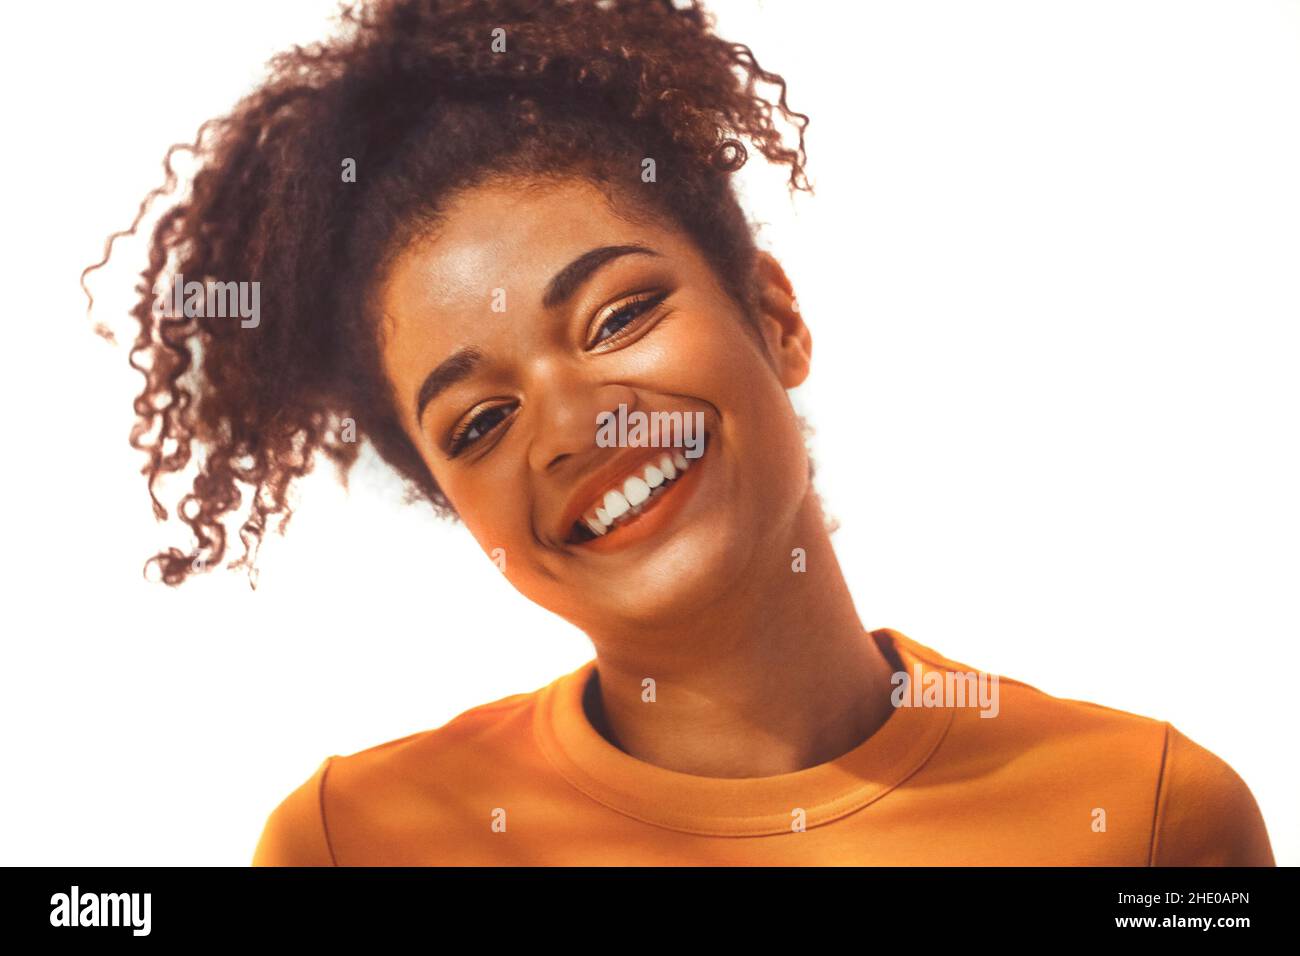 Nahaufnahme Porträt der ruhigen schwarzen afrikanischen jungen Frau mit lockigen üppigen Haaren in hohen Pferdeschwanz gebunden, posiert mit entspannten heiteren Gesichtsausdruck, isola Stockfoto